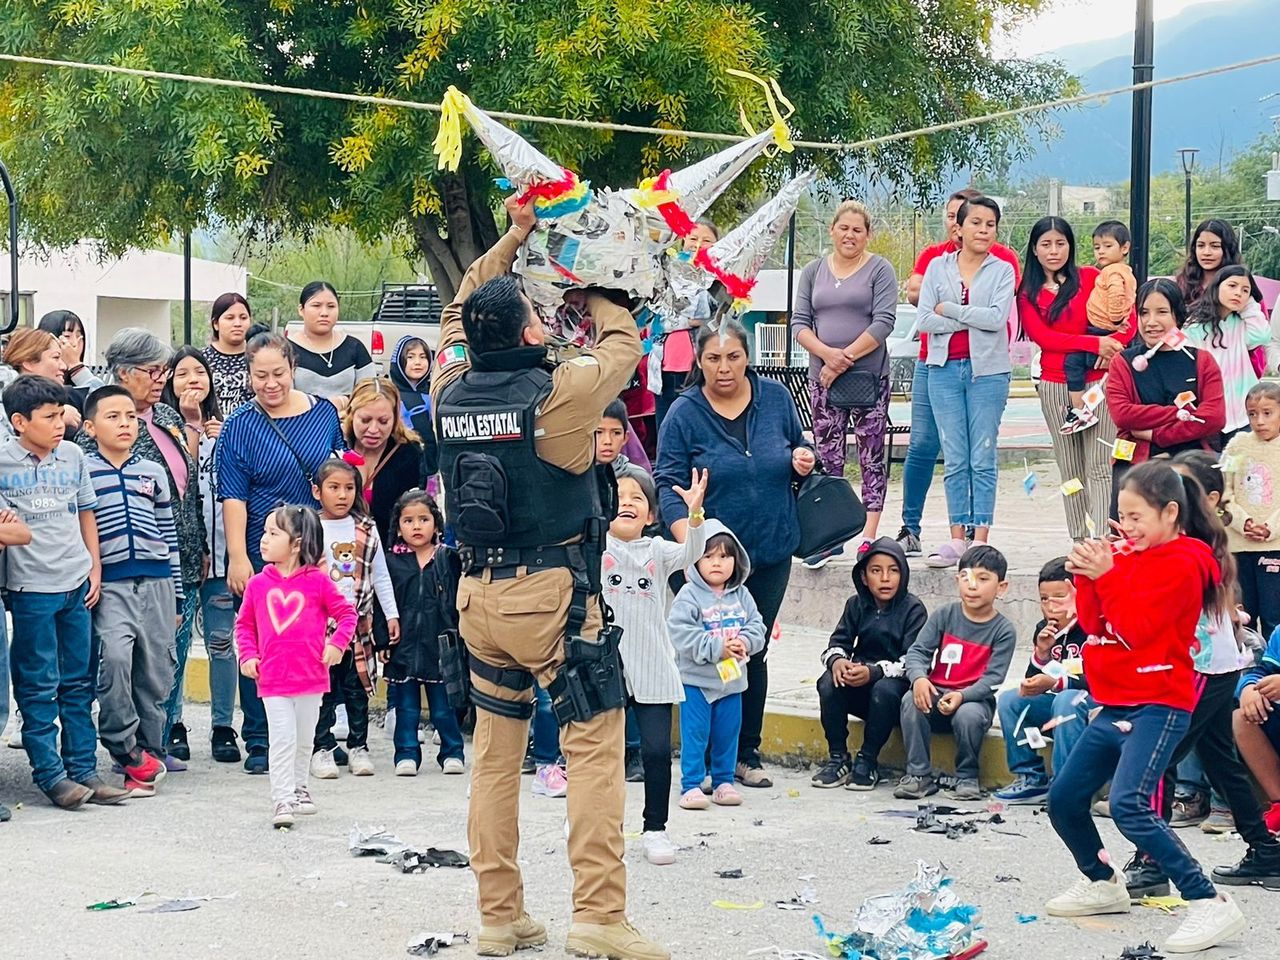 Se realizan diariamente acciones de proximidad social en Coahuila. Niñas, niños y sus familias convivieron con los elementos de seguridad.